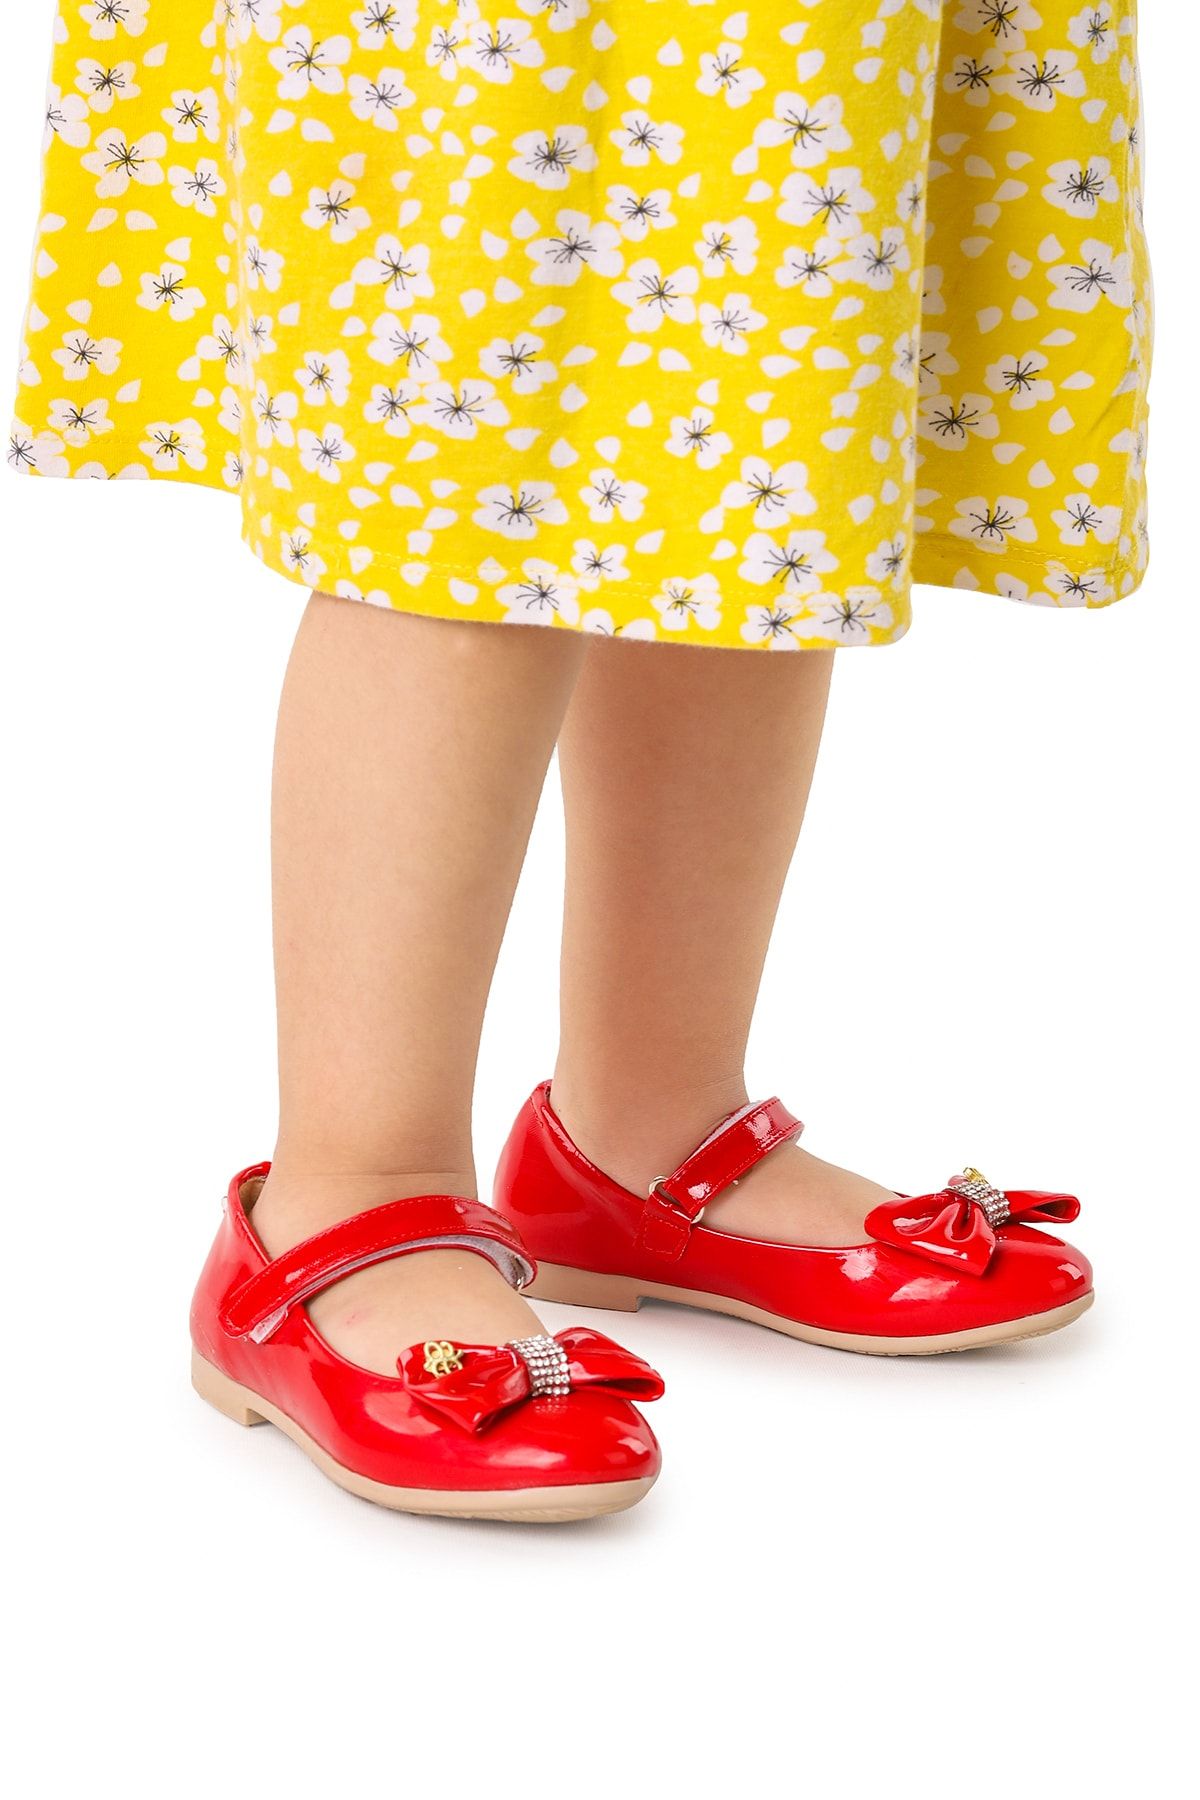 Kiko Kids Cırtlı Fiyonklu Kız Çocuk Babet Ayakkabı Ege 201 Rugan